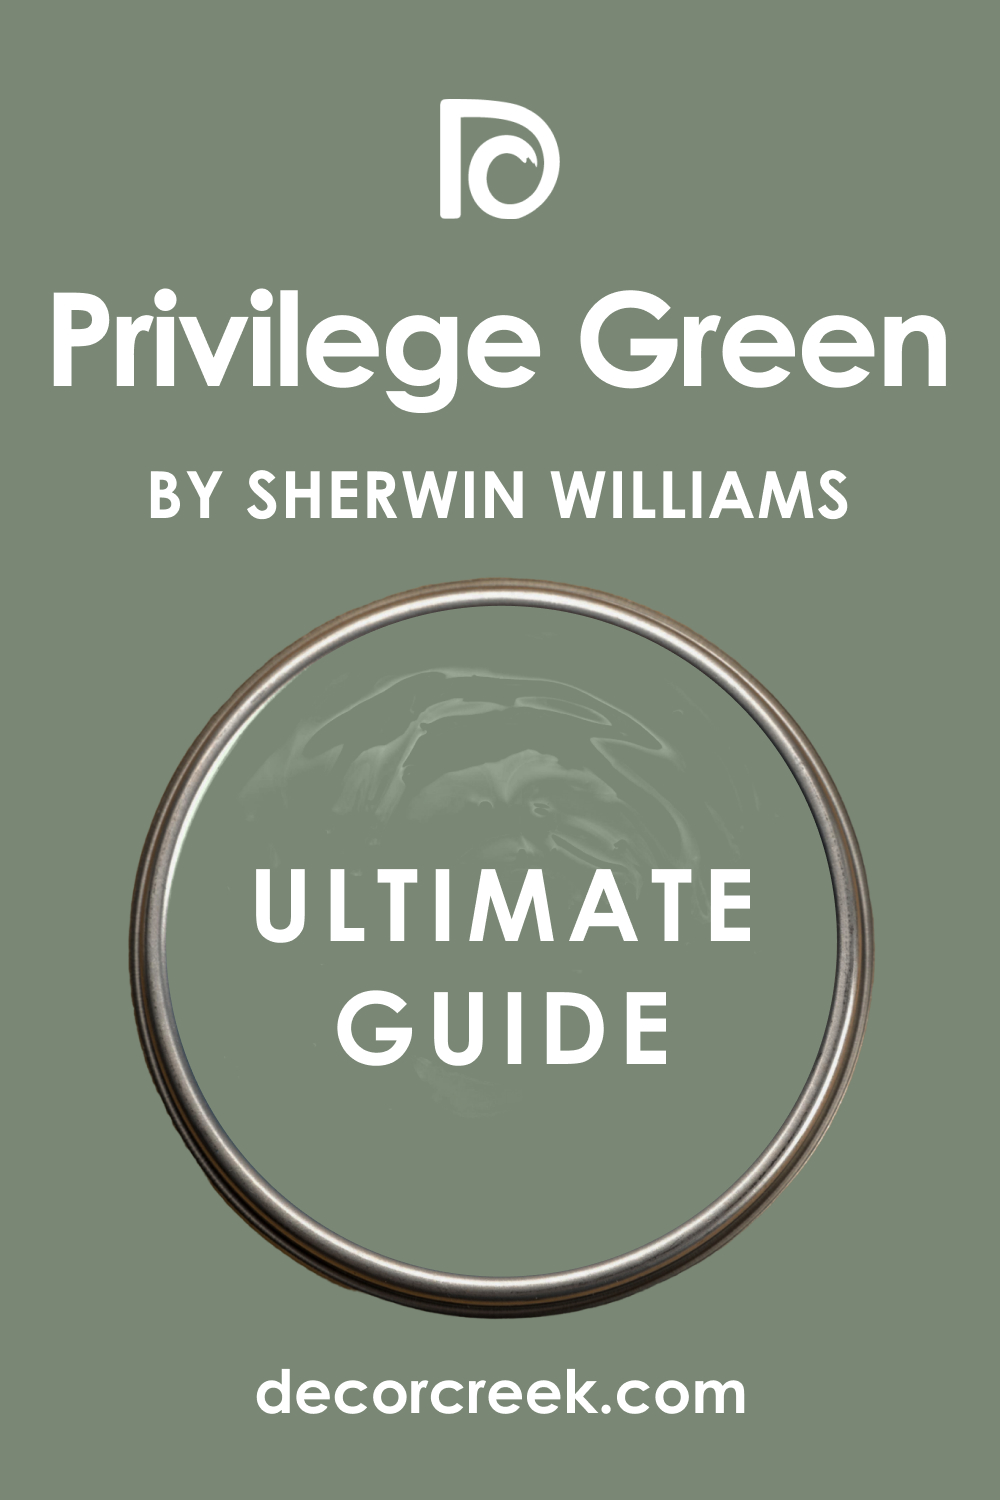 Ulltimate Guide of Privilege Green SW 6193 